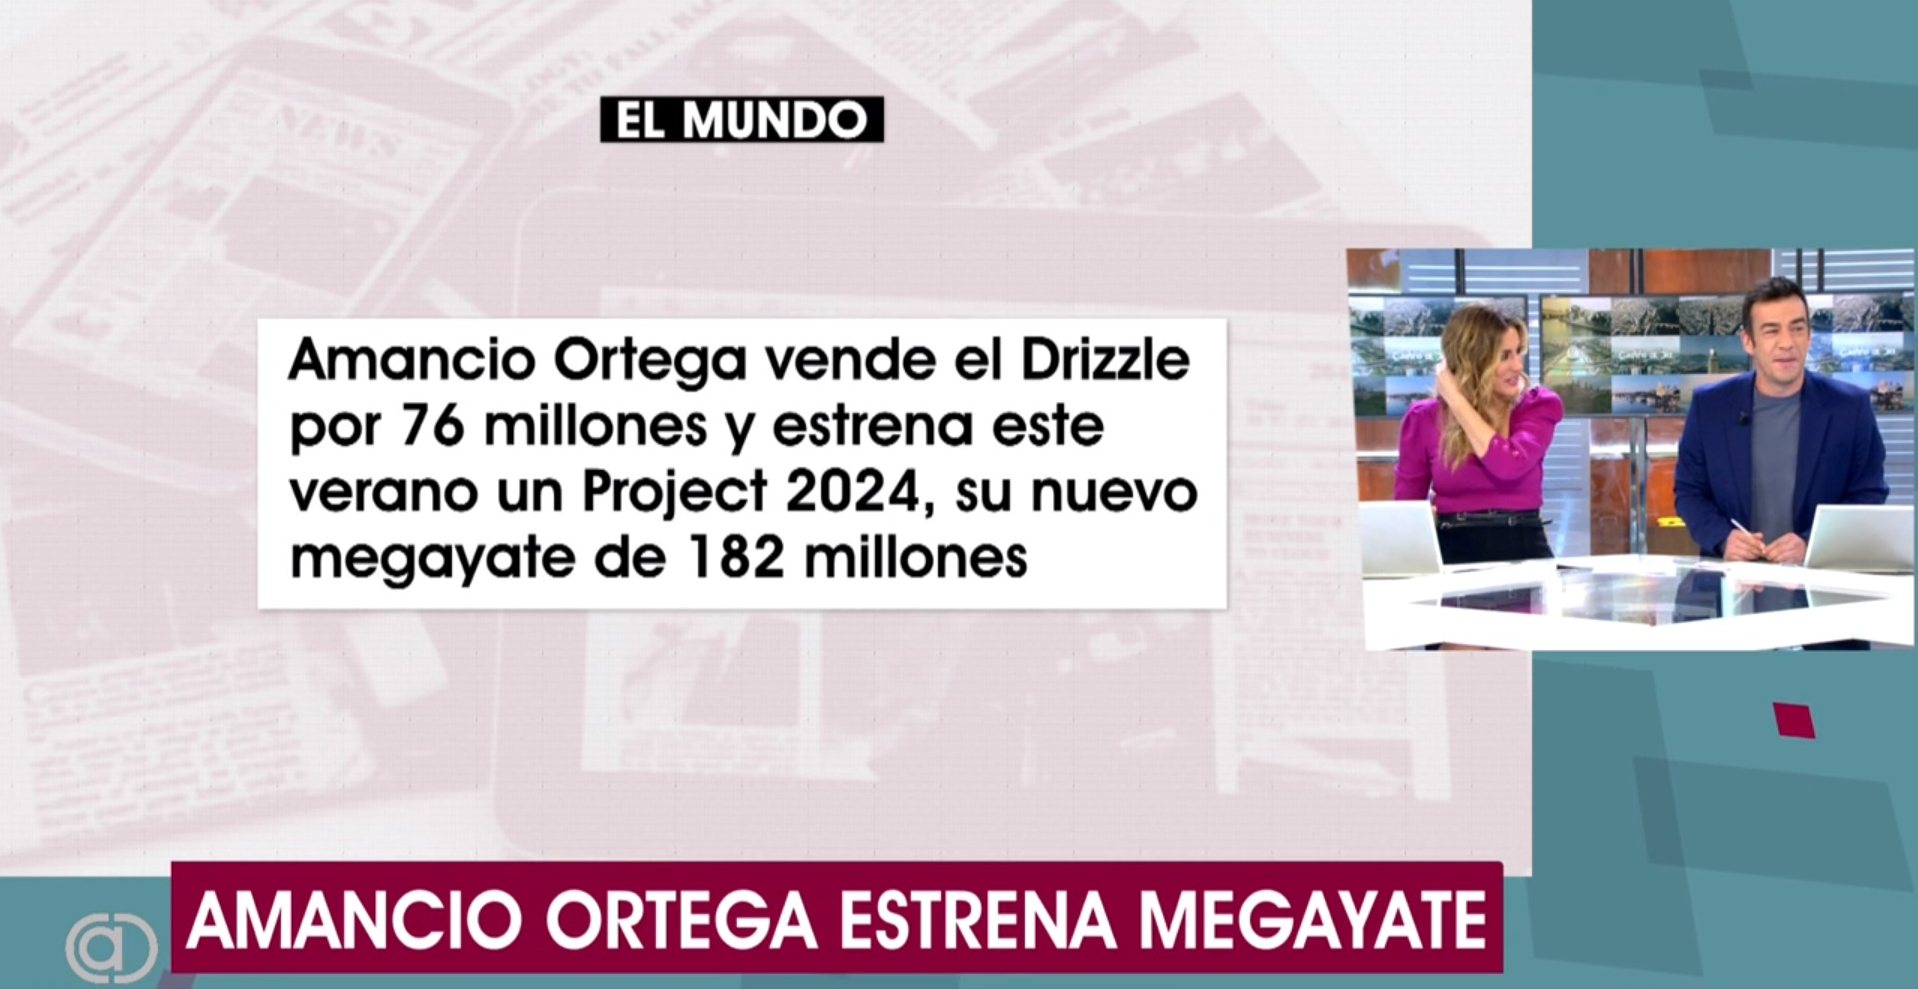 El nuevo 'capricho' de Amancio Ortega: un megayate de 182 millones de euros